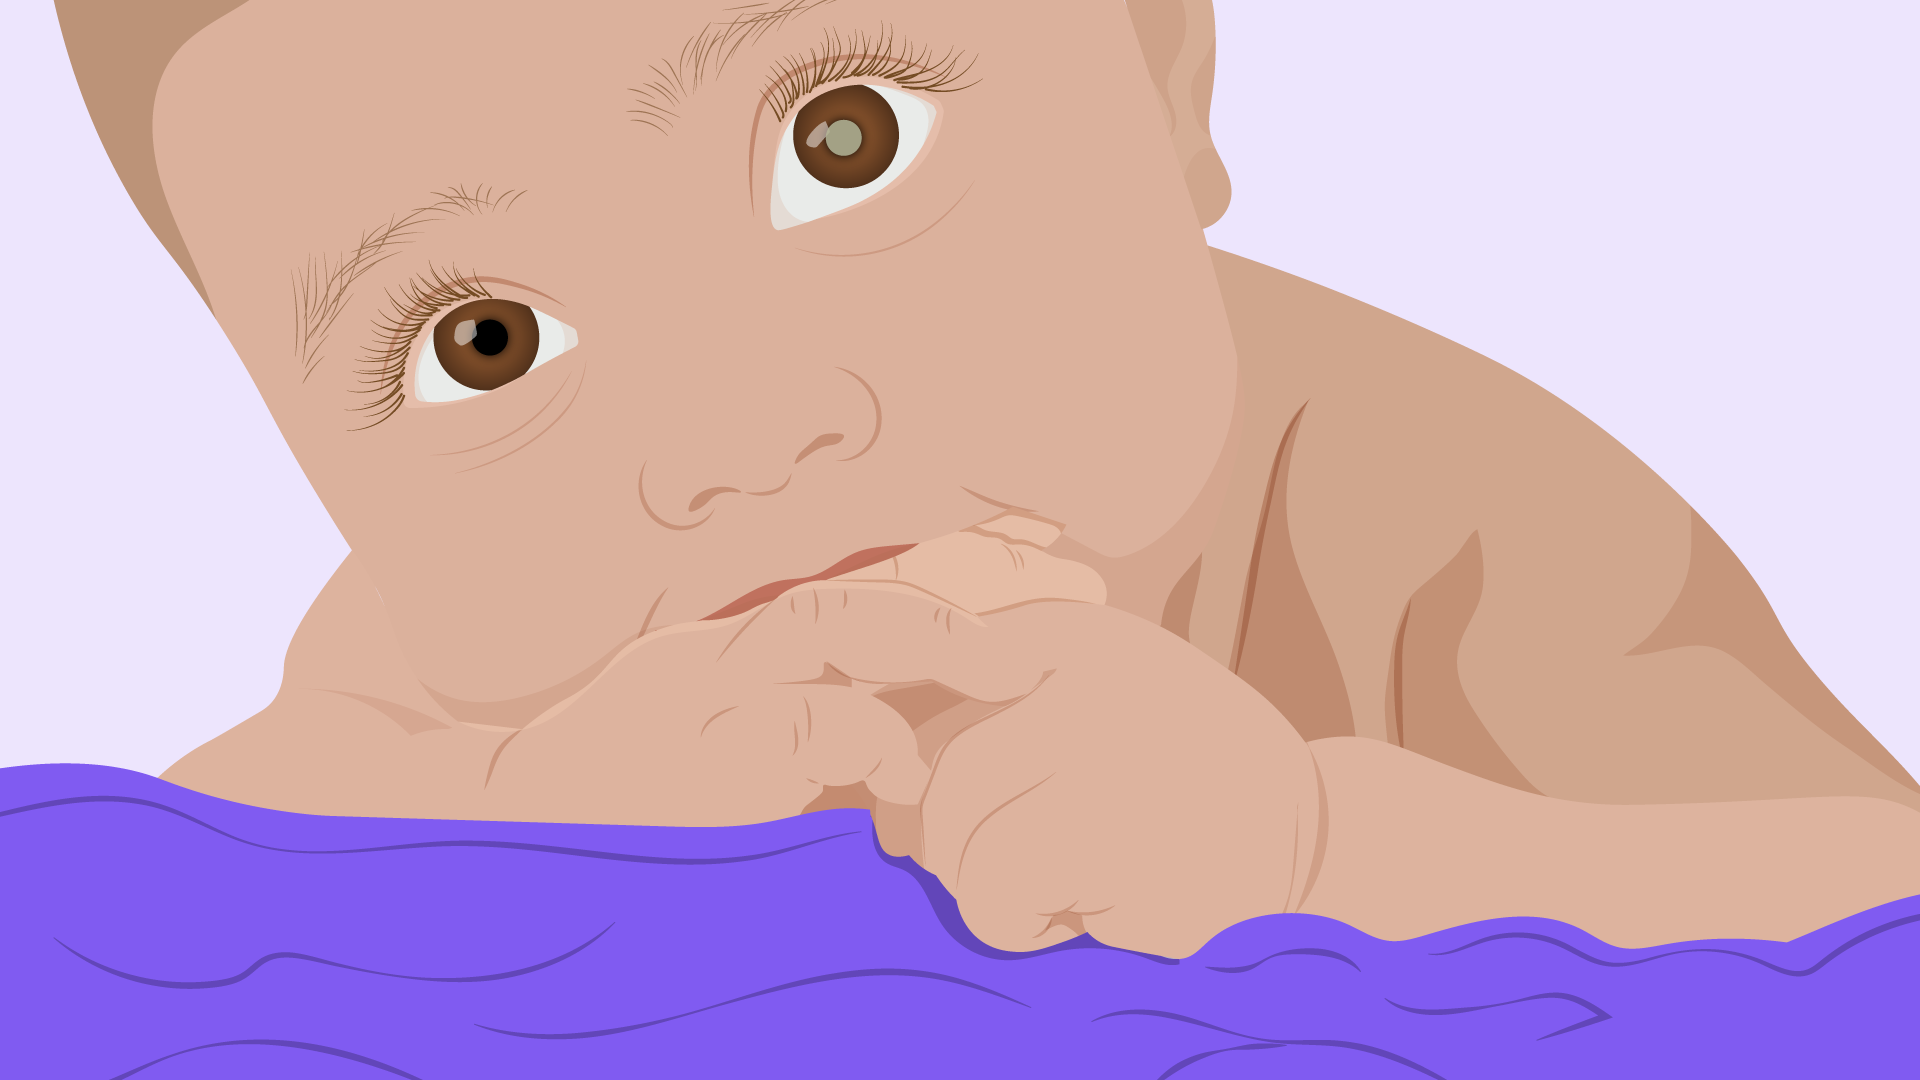 Bebê com reflexo branco no olho, sugestivo de um retinoblastoma.